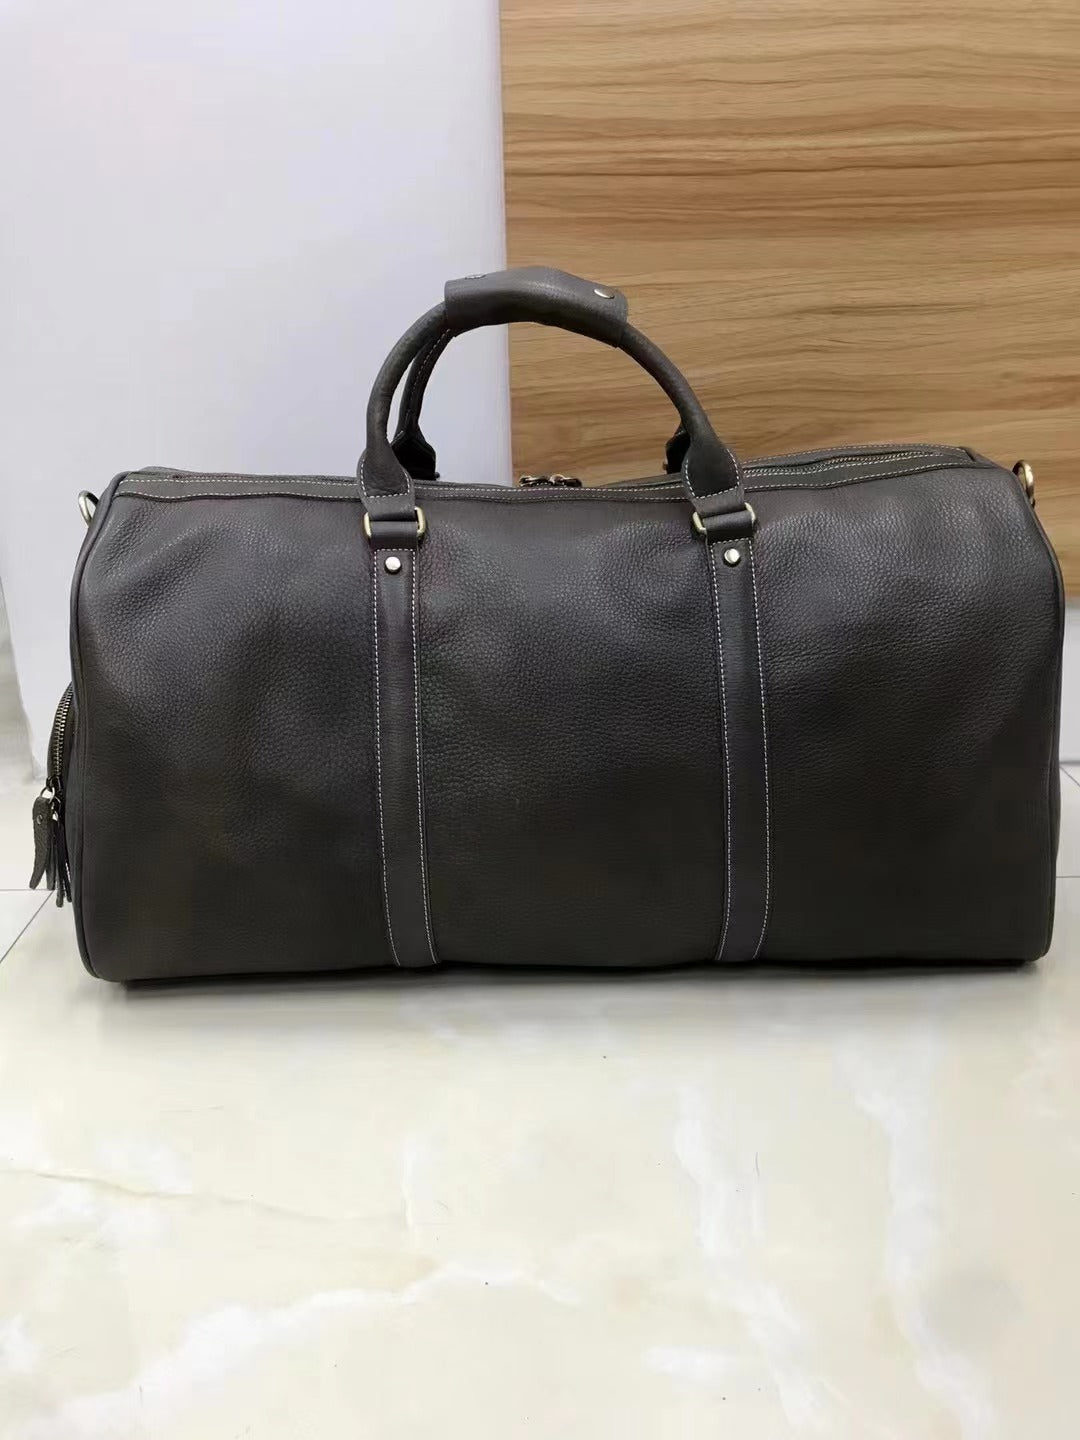 Large Capacity Retro Leather Luggage Bag for Travel woyaza